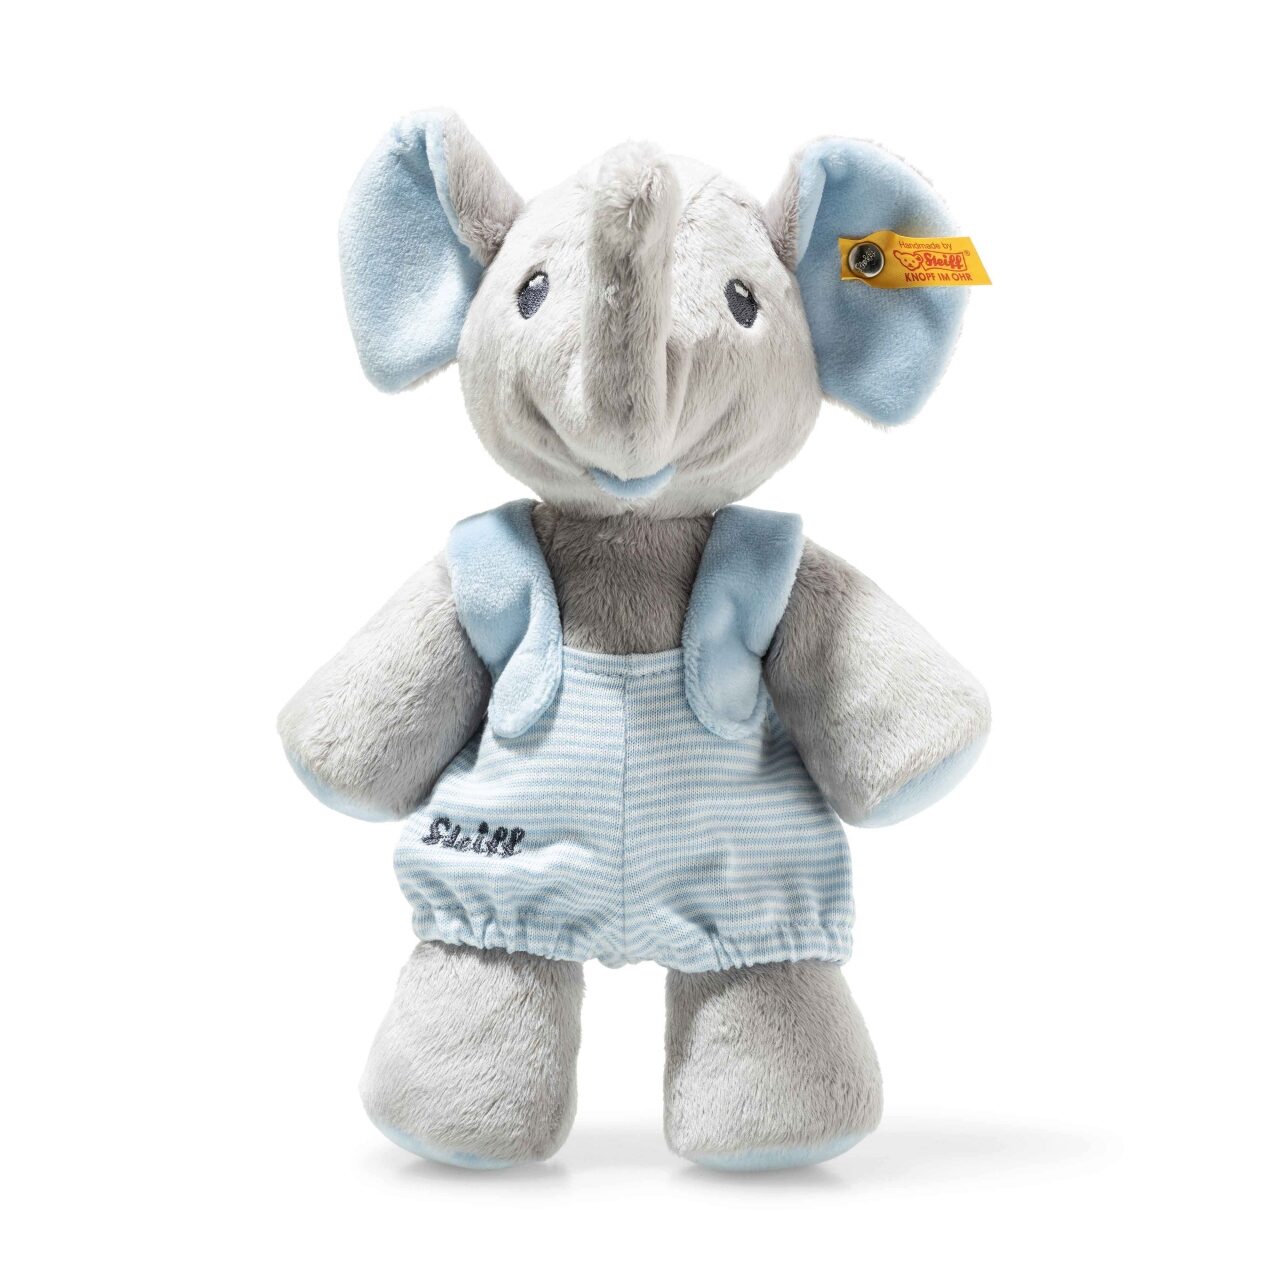 Steiff Baby Trampili Elefant 24 cm grau/blau 